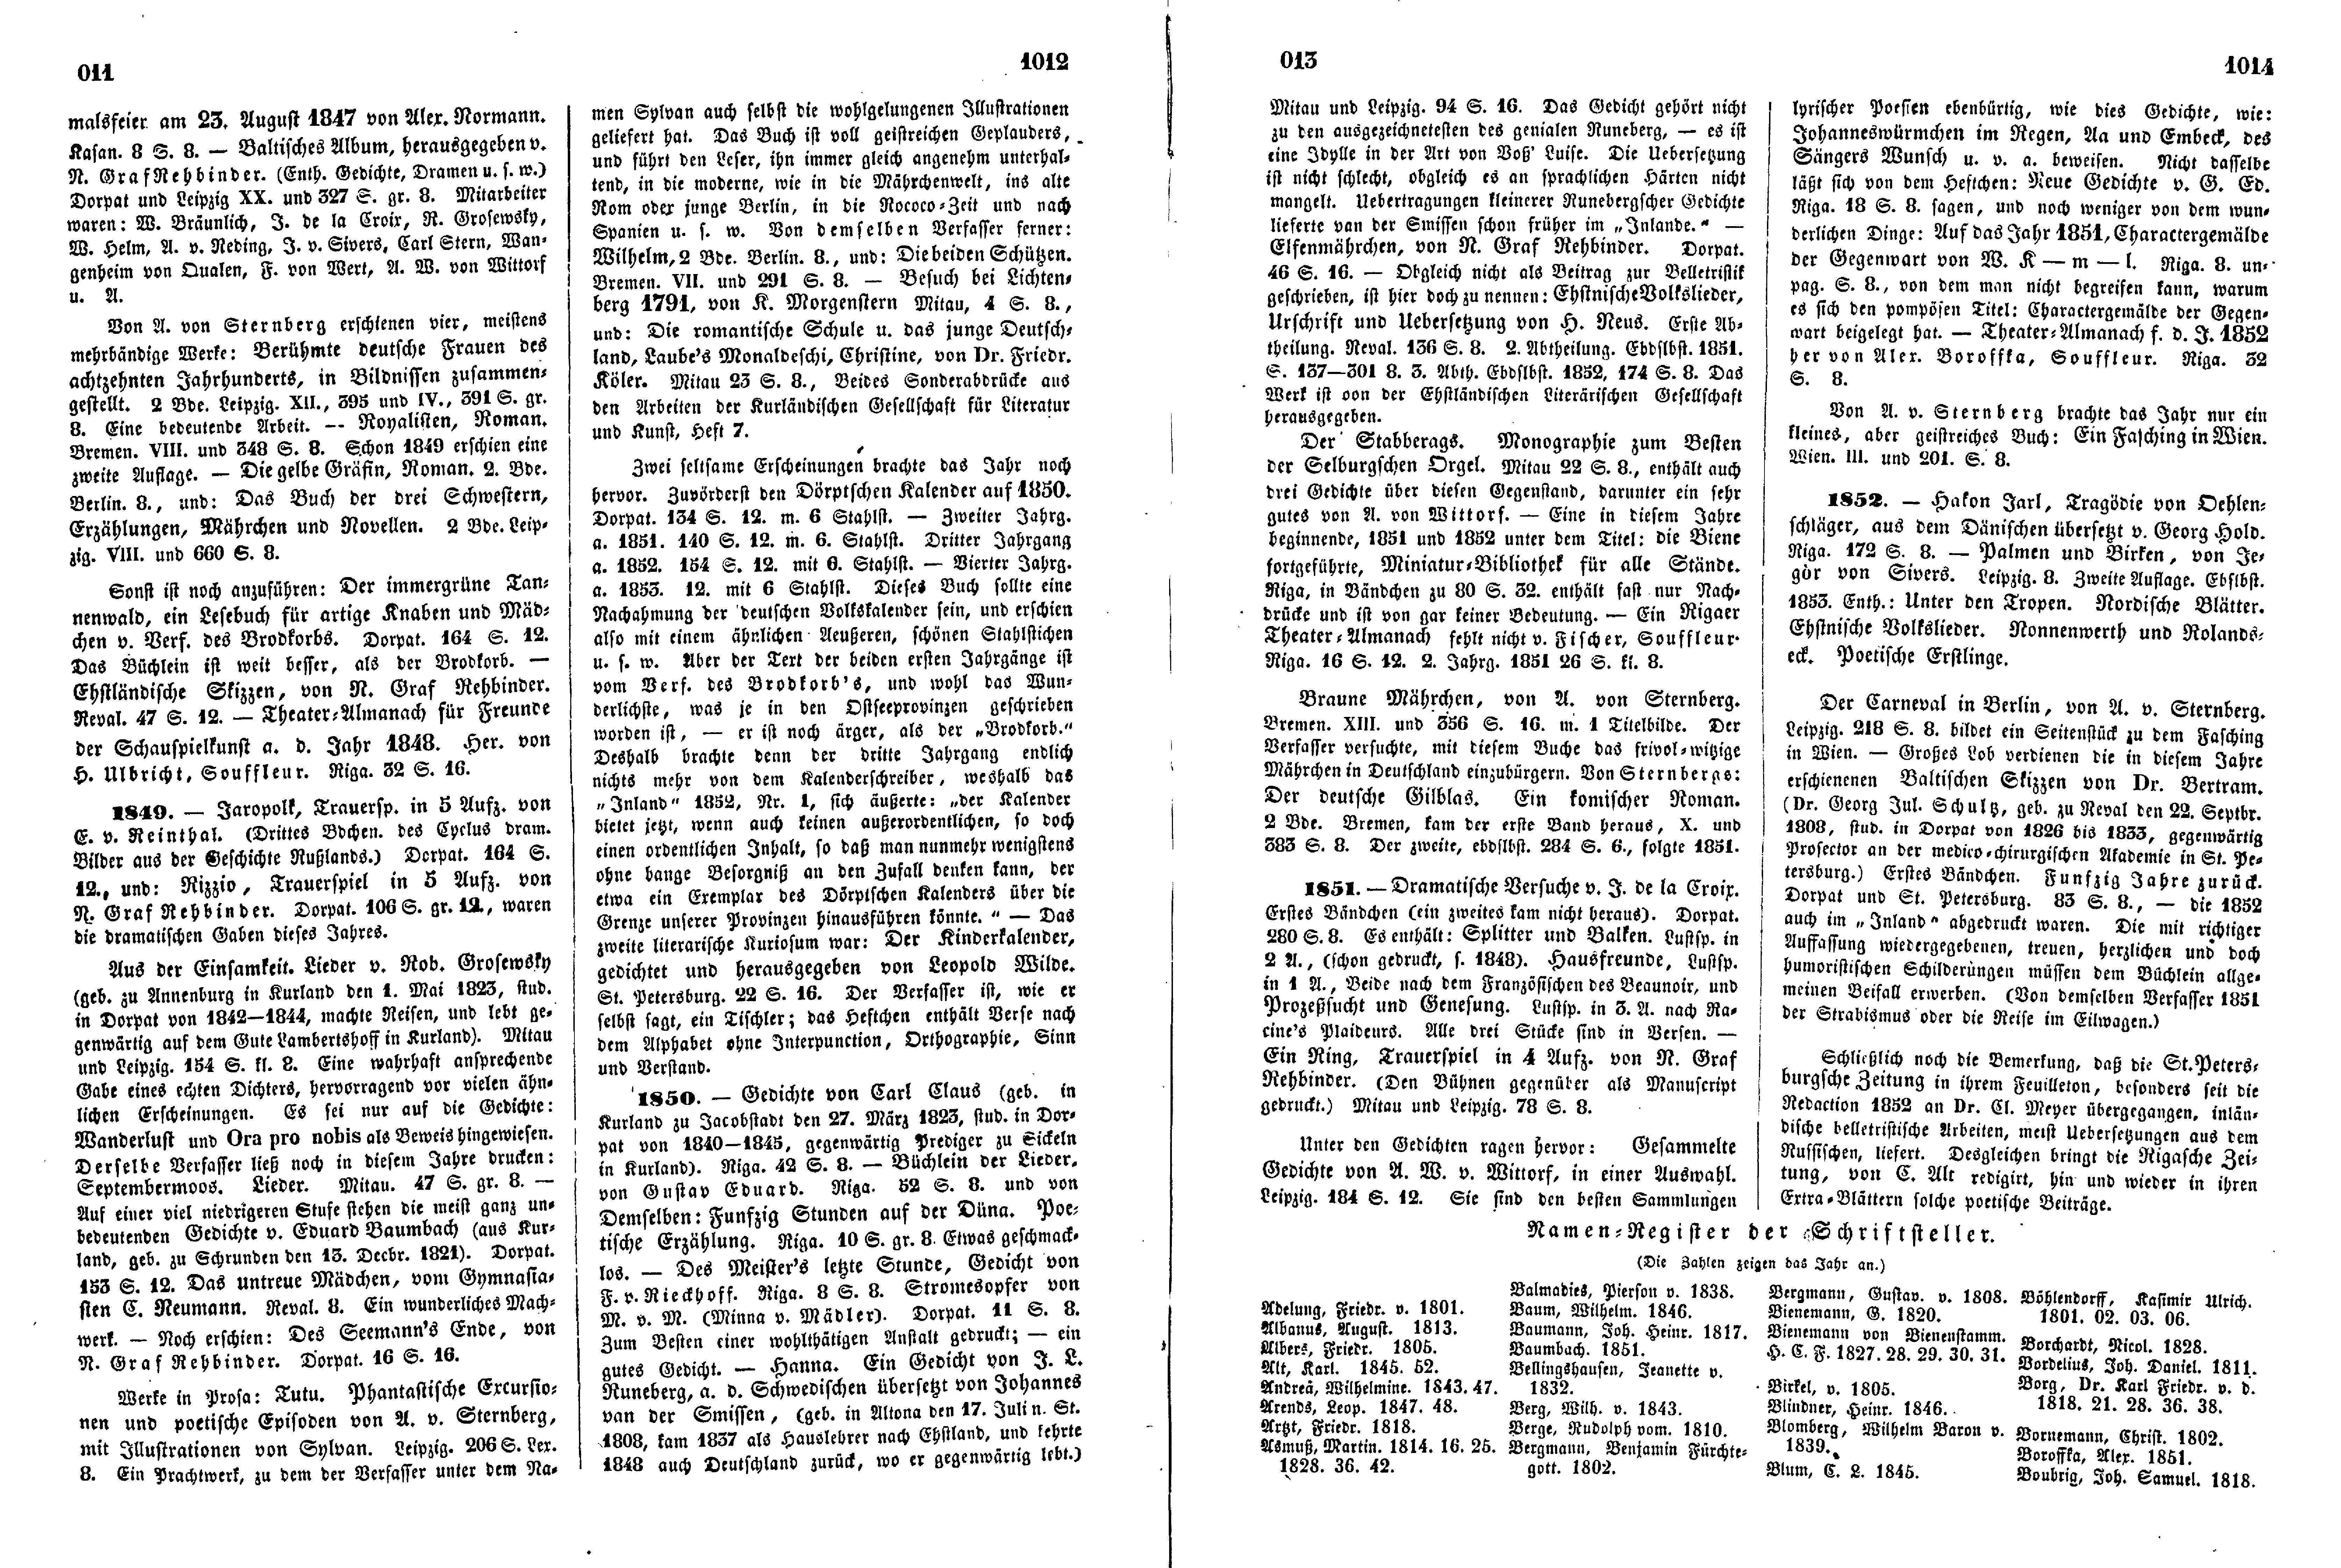 Die belletristische Literatur der Ostseeprovinzen Russland's [4] (1853) | 2. (1011-1014) Main body of text